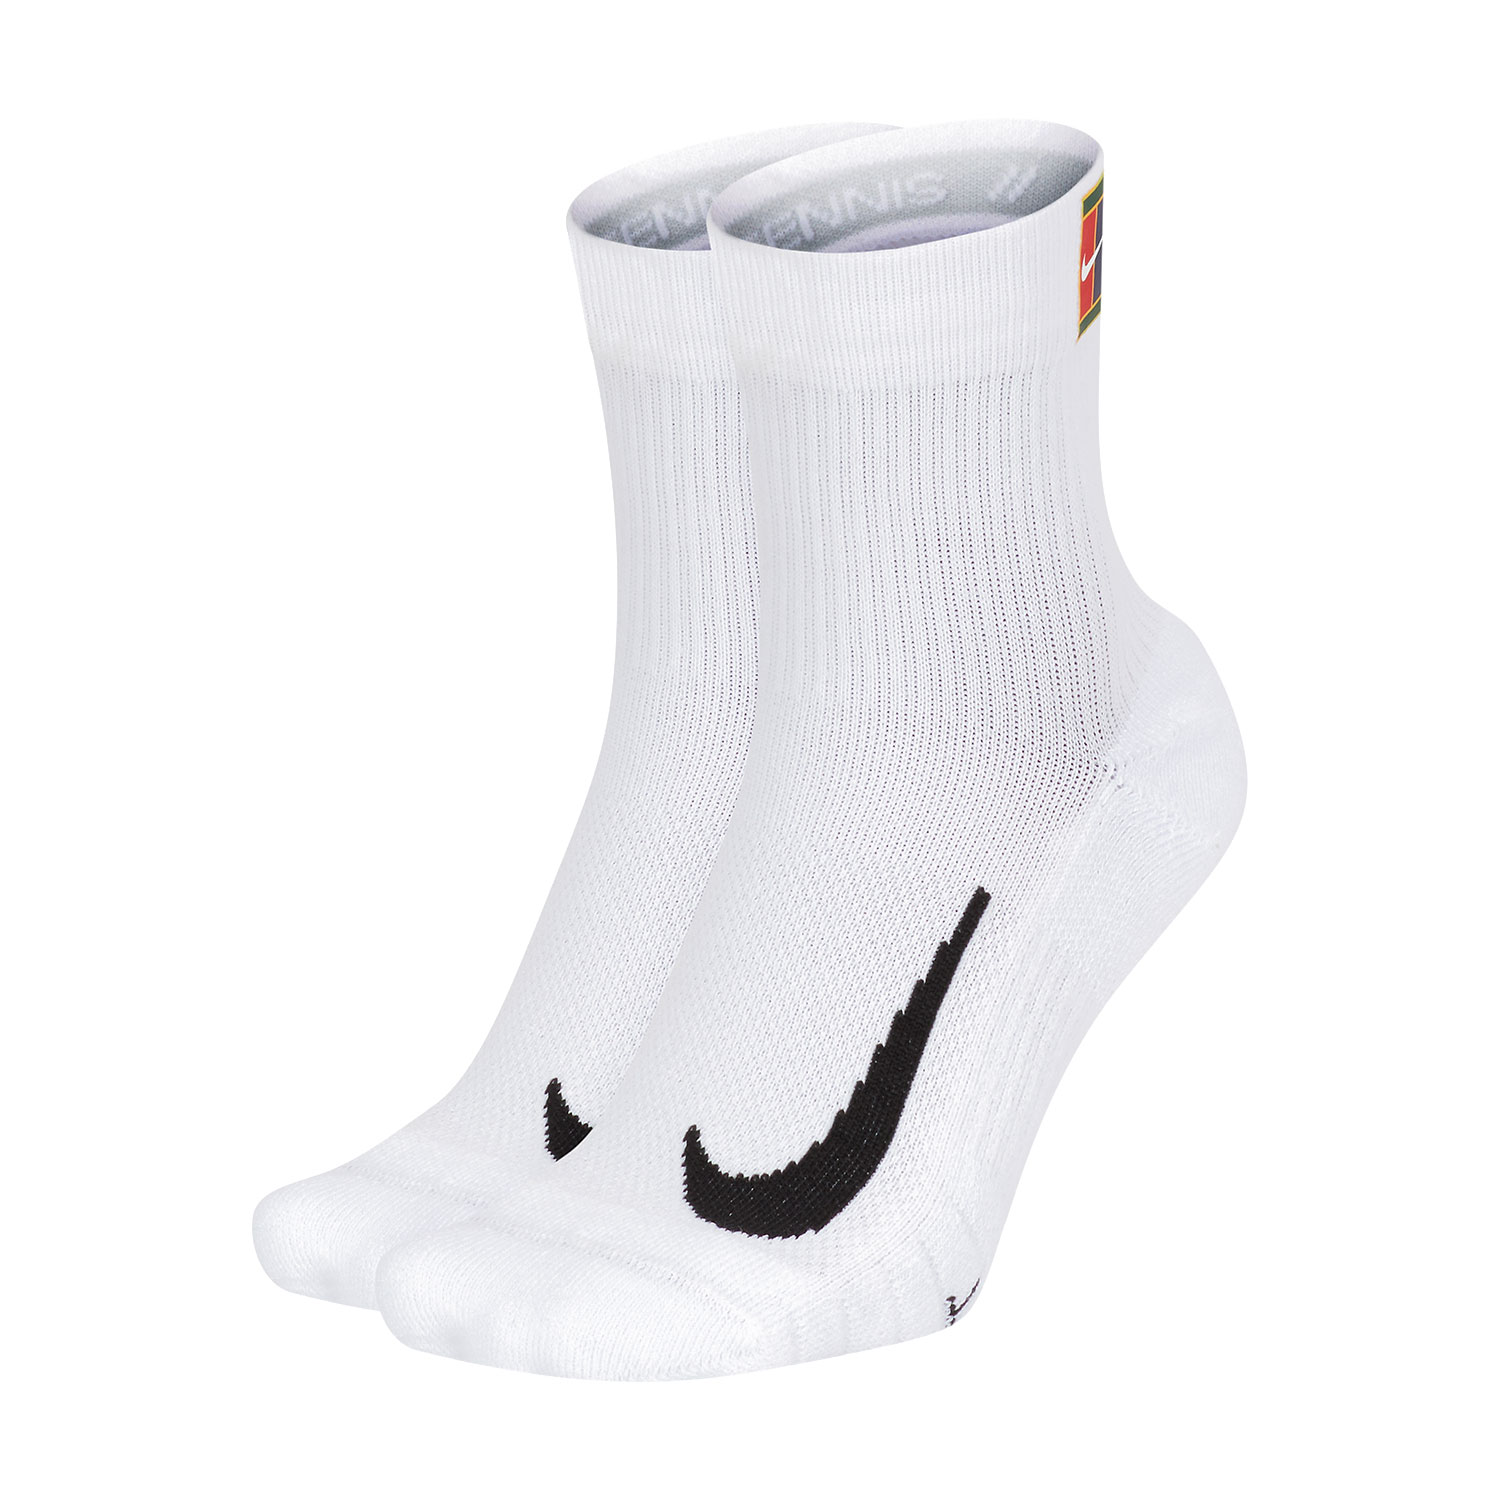 Nike Multiplier Max x 2 Socks - White